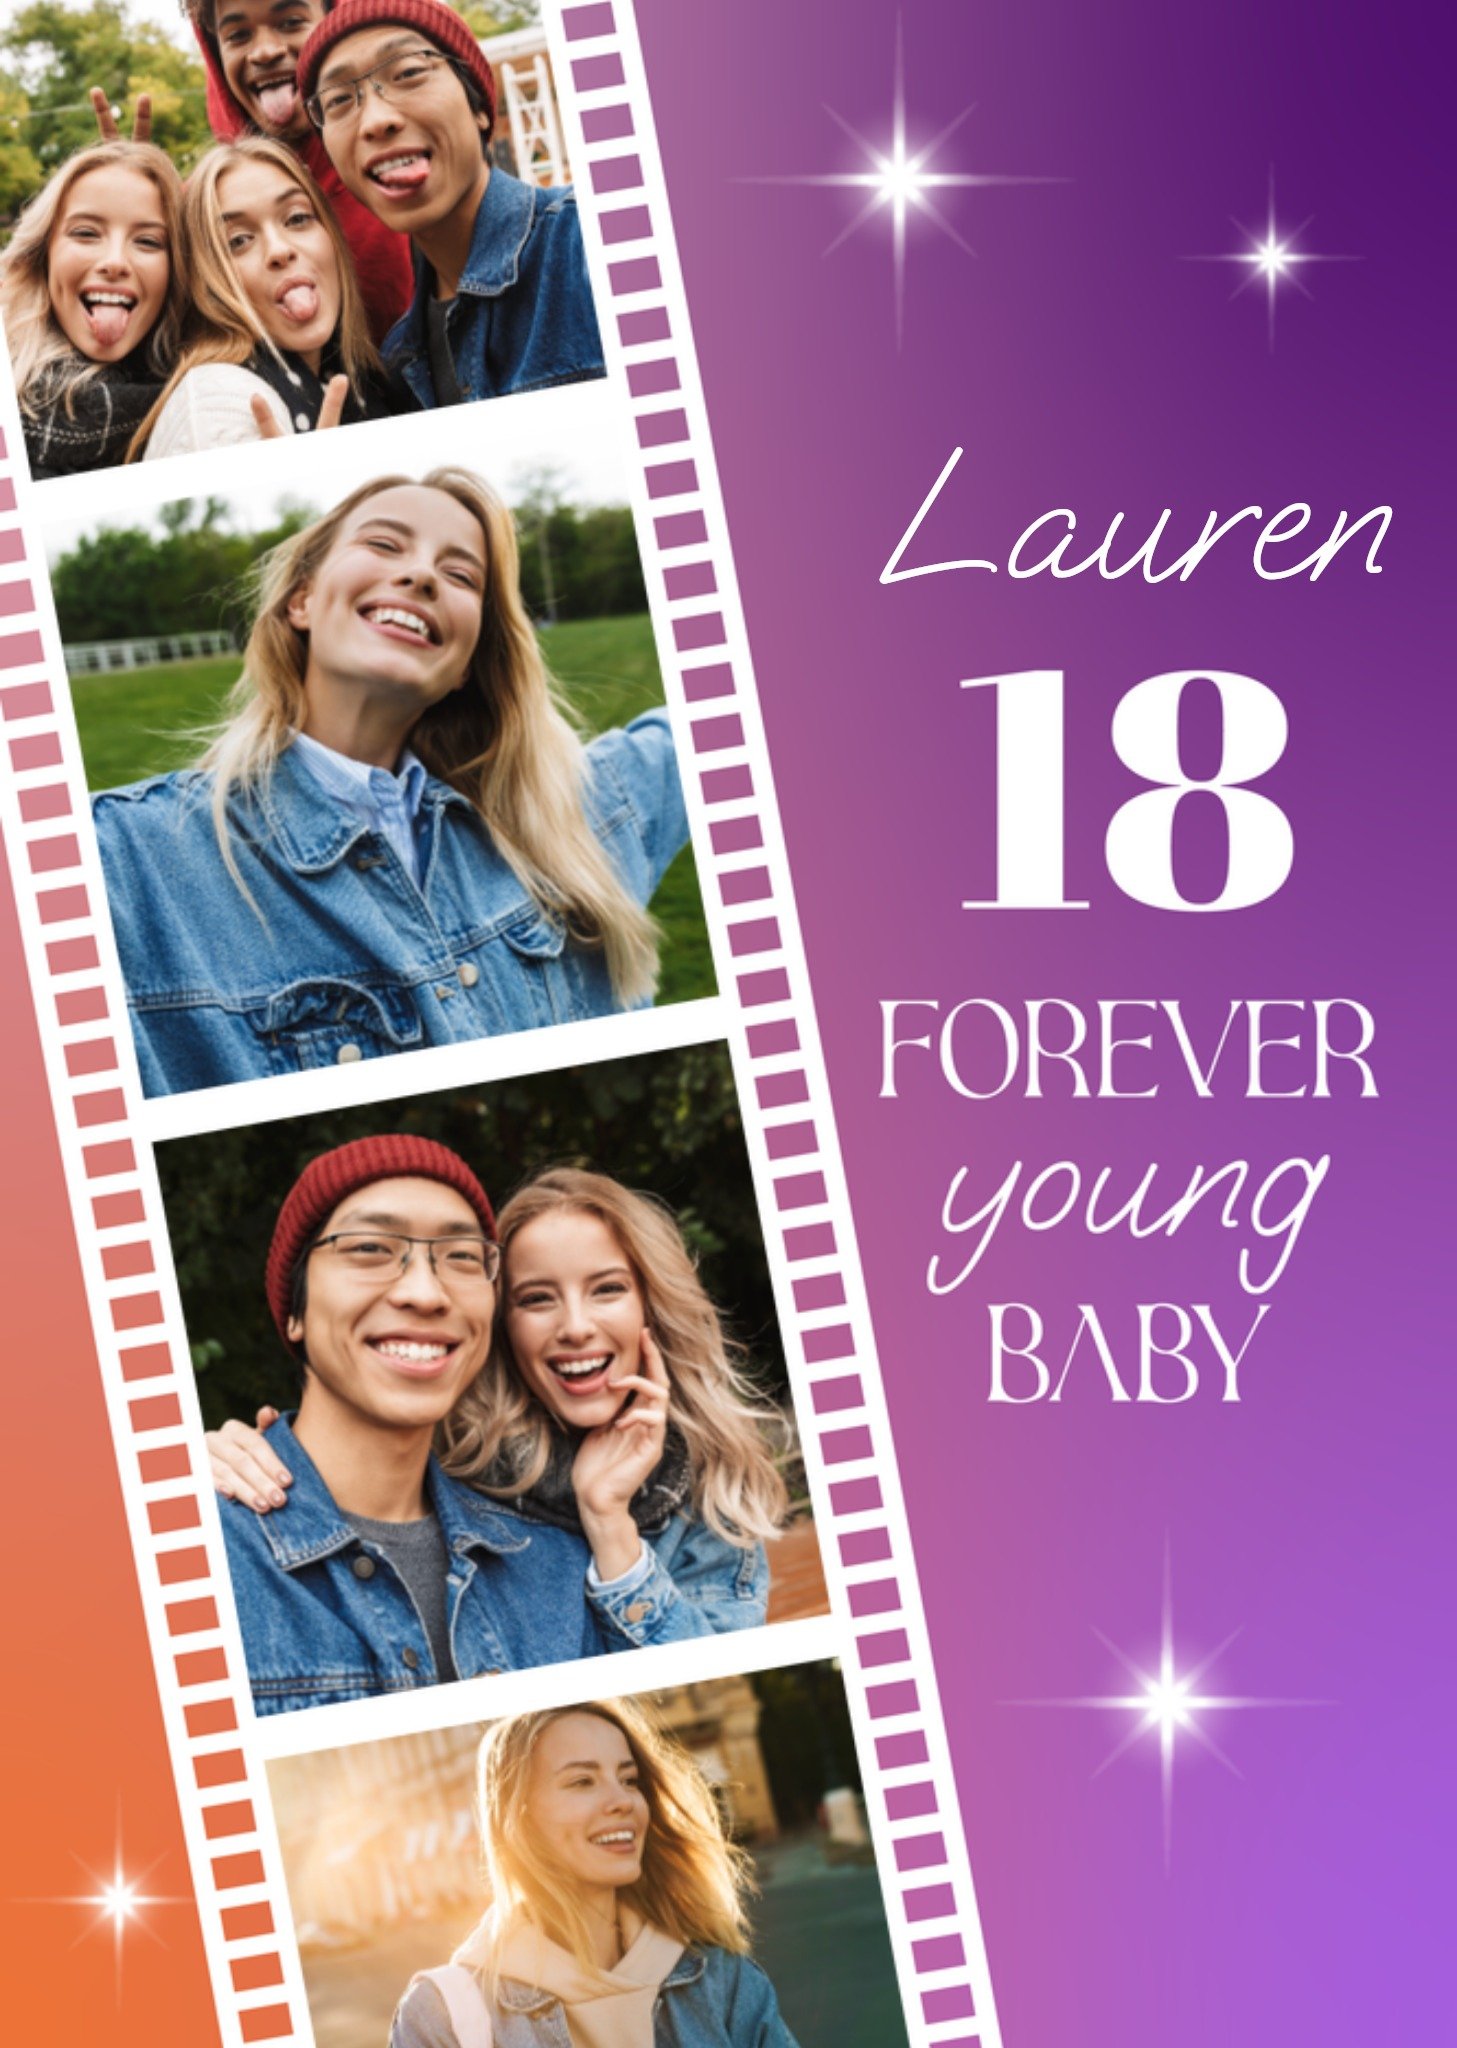 Verjaardagskaart - 18 Forever young baby! - Fotokaart - Aanpasbare tekst